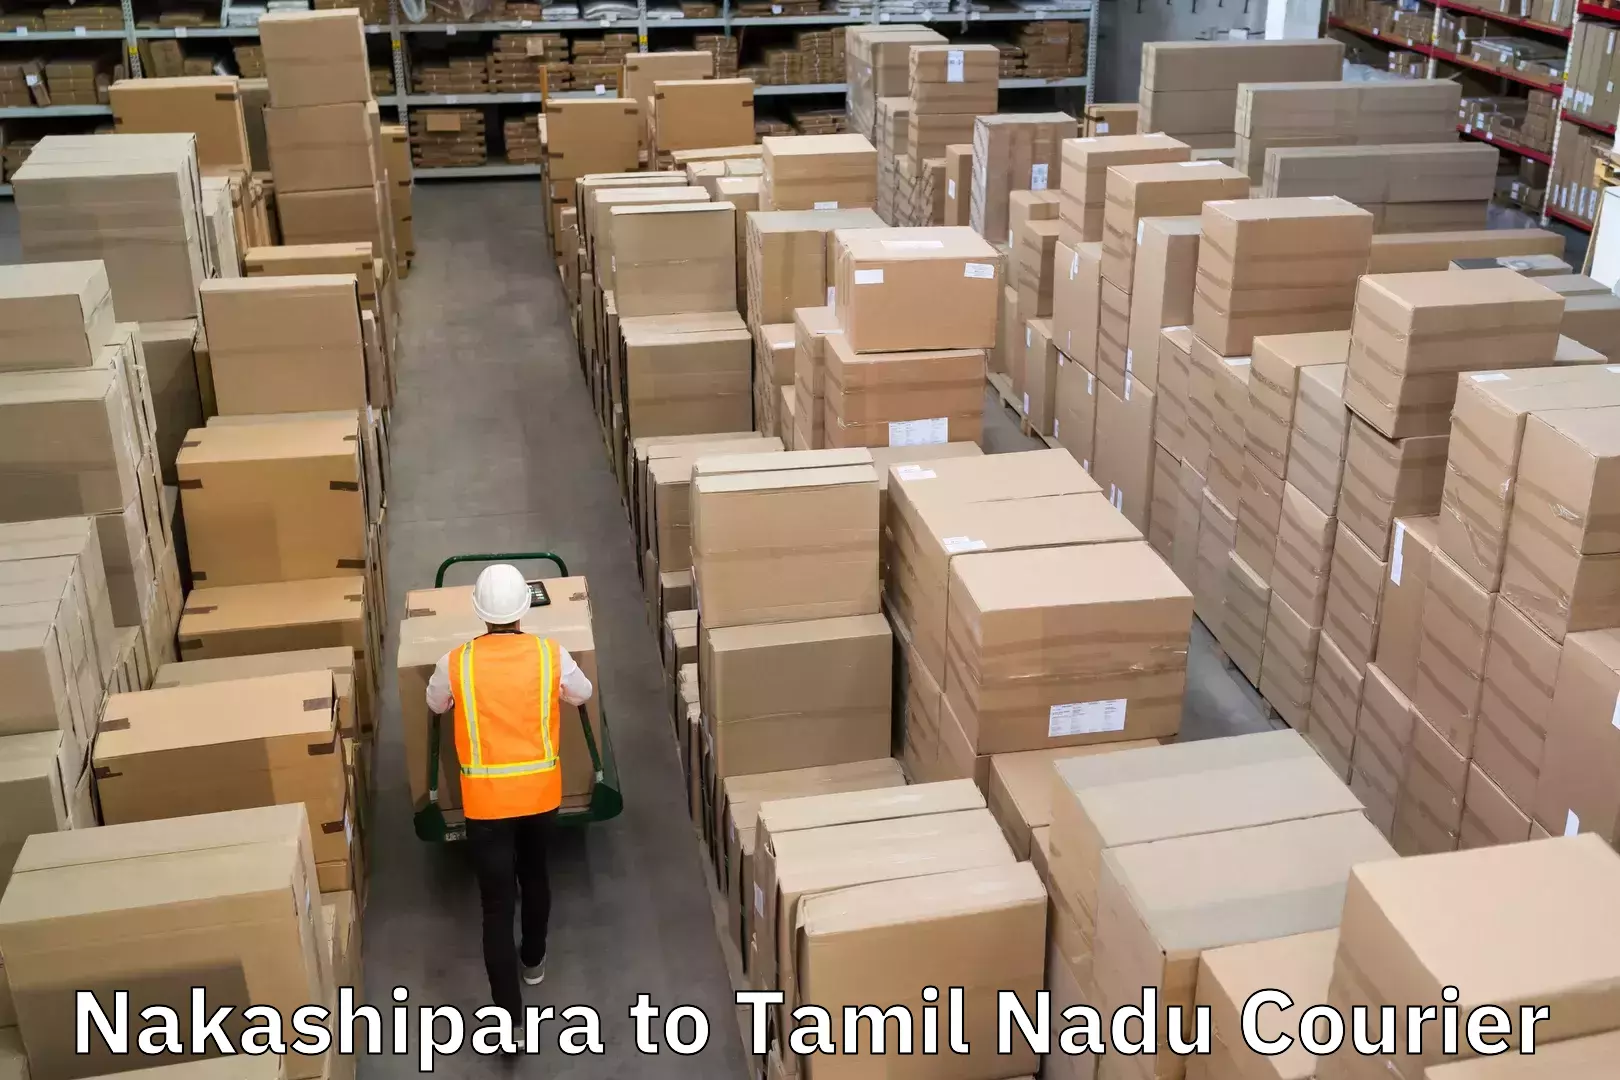 Express delivery solutions Nakashipara to Tamil Nadu